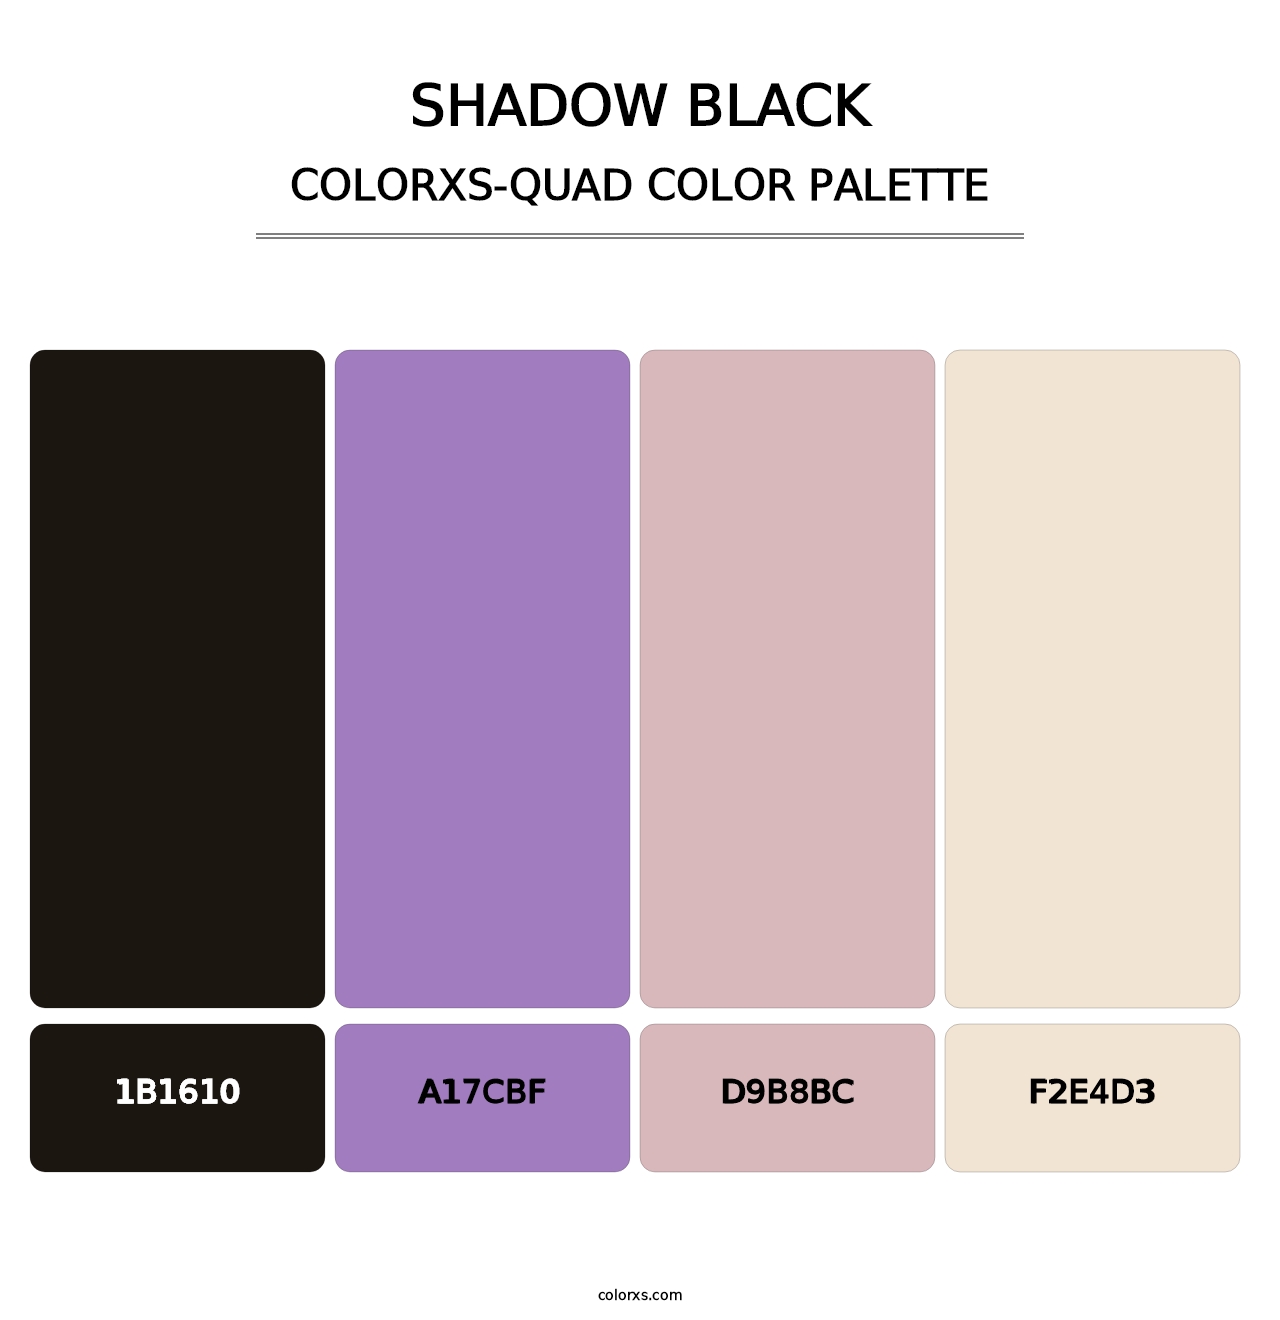 Shadow Black - Colorxs Quad Palette